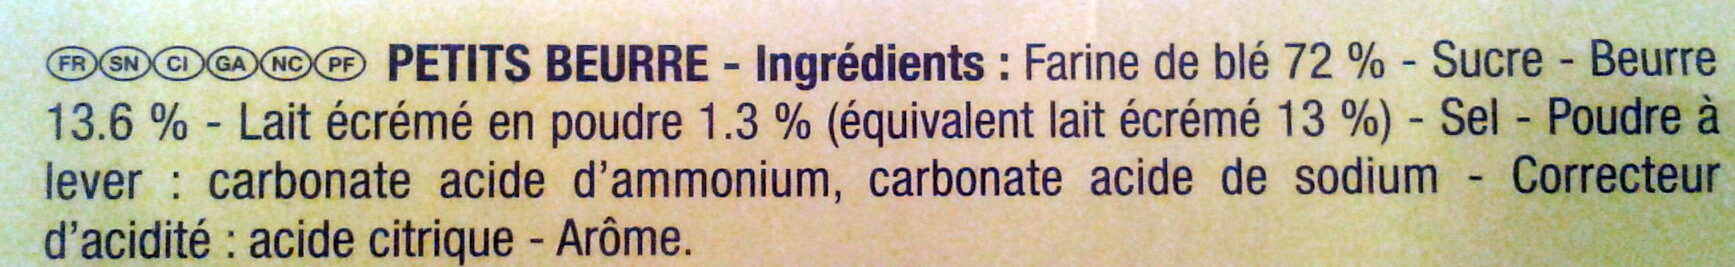 Le Véritable Petit Beurre - Ingredients - fr